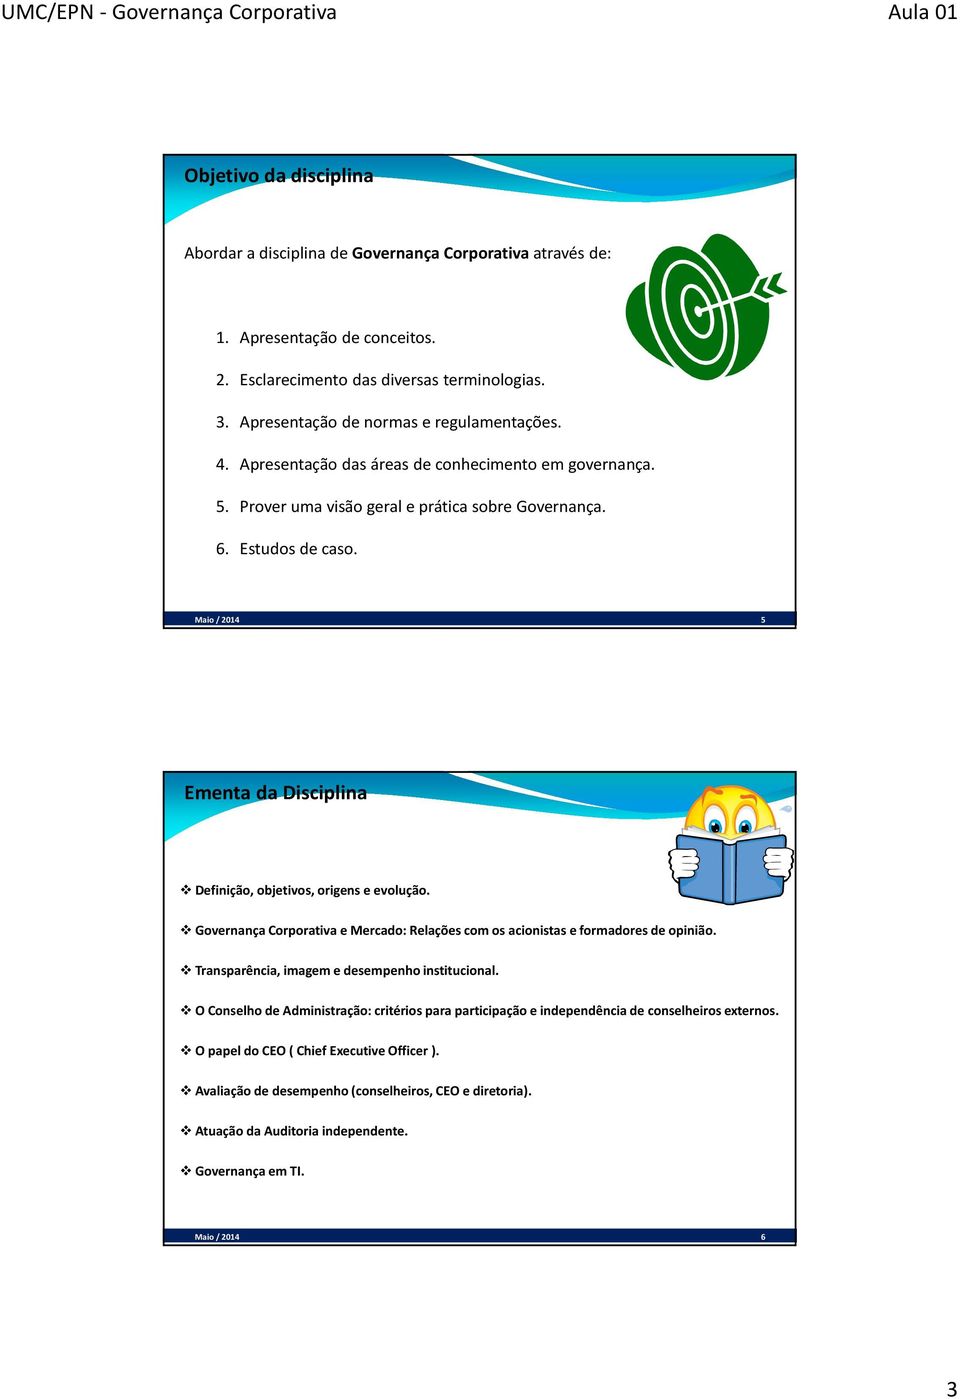 Maio / 2014 5 Ementa da Disciplina Definição, objetivos, origens e evolução. Governança Corporativa e Mercado: Relações com os acionistas e formadores de opinião.